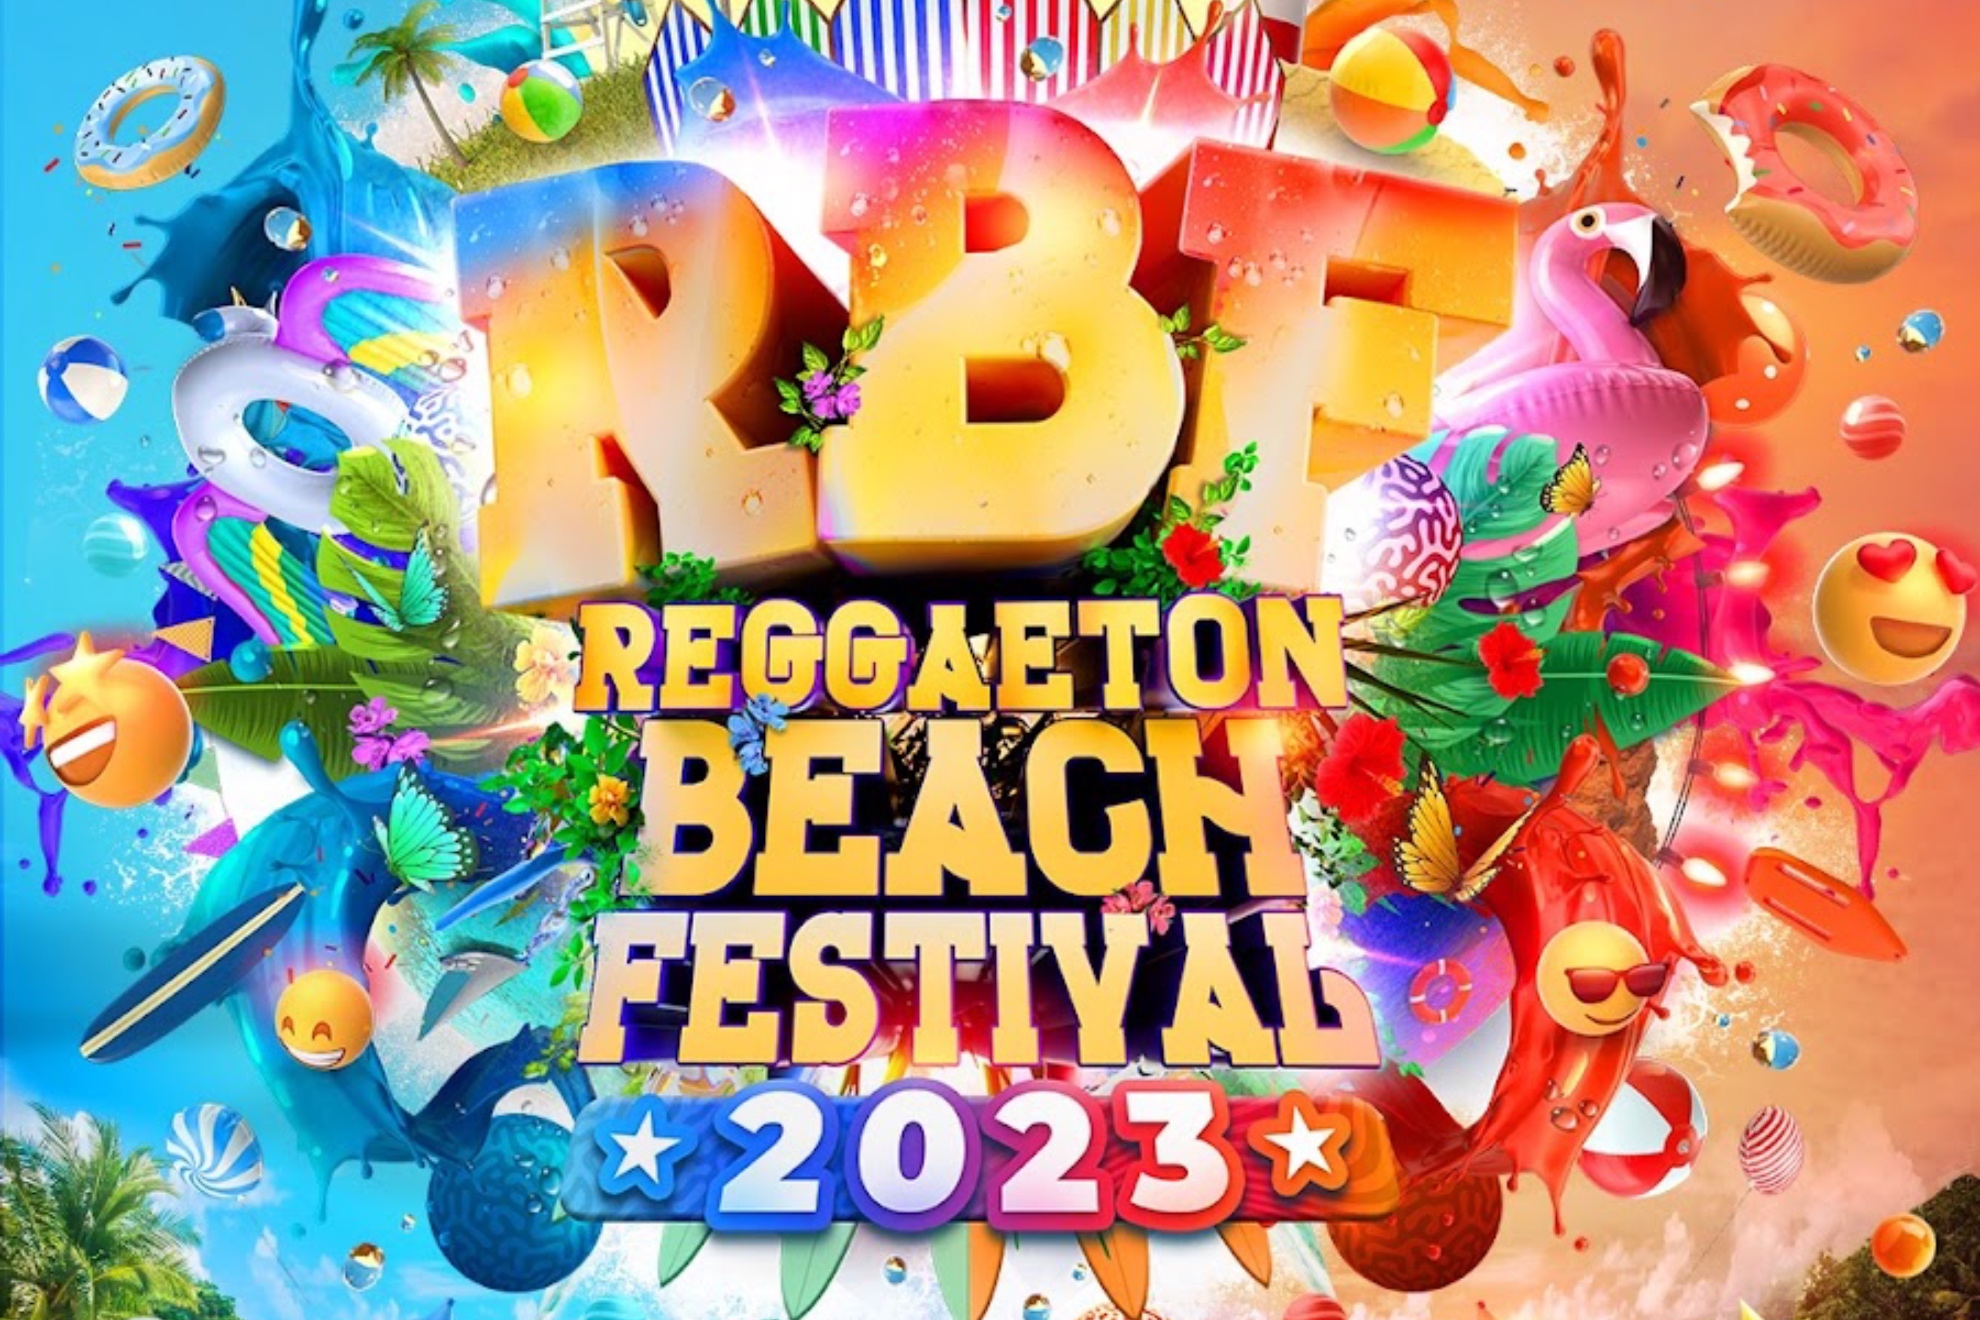 El Reggaeton Beach Festival congregar a 140.000 personas en Madrid y Barcelona este fin de semana